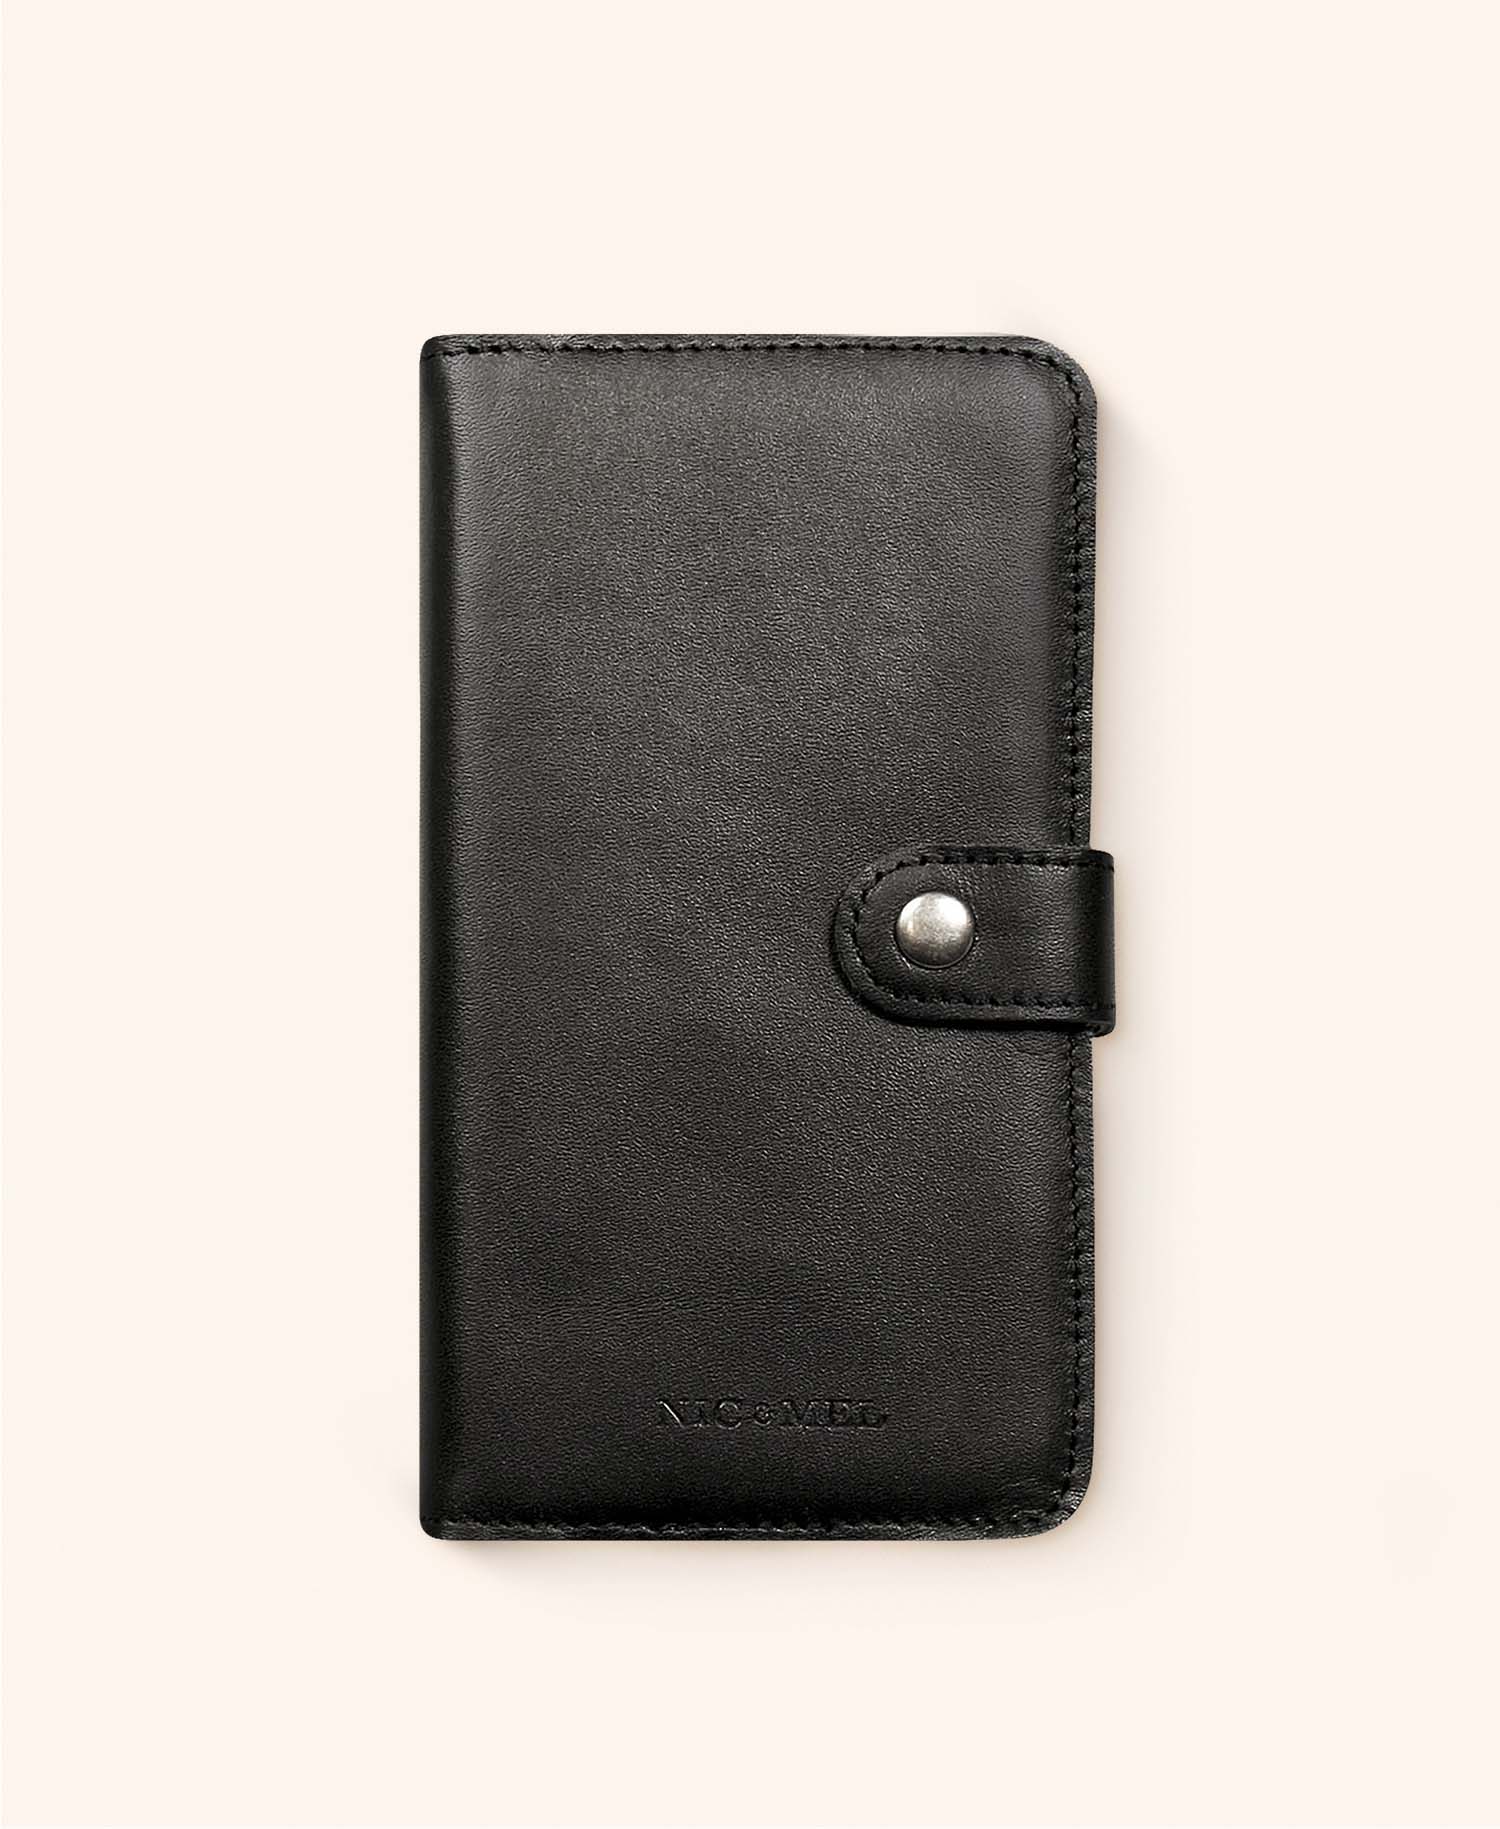 Andrew black wallet iphone 11